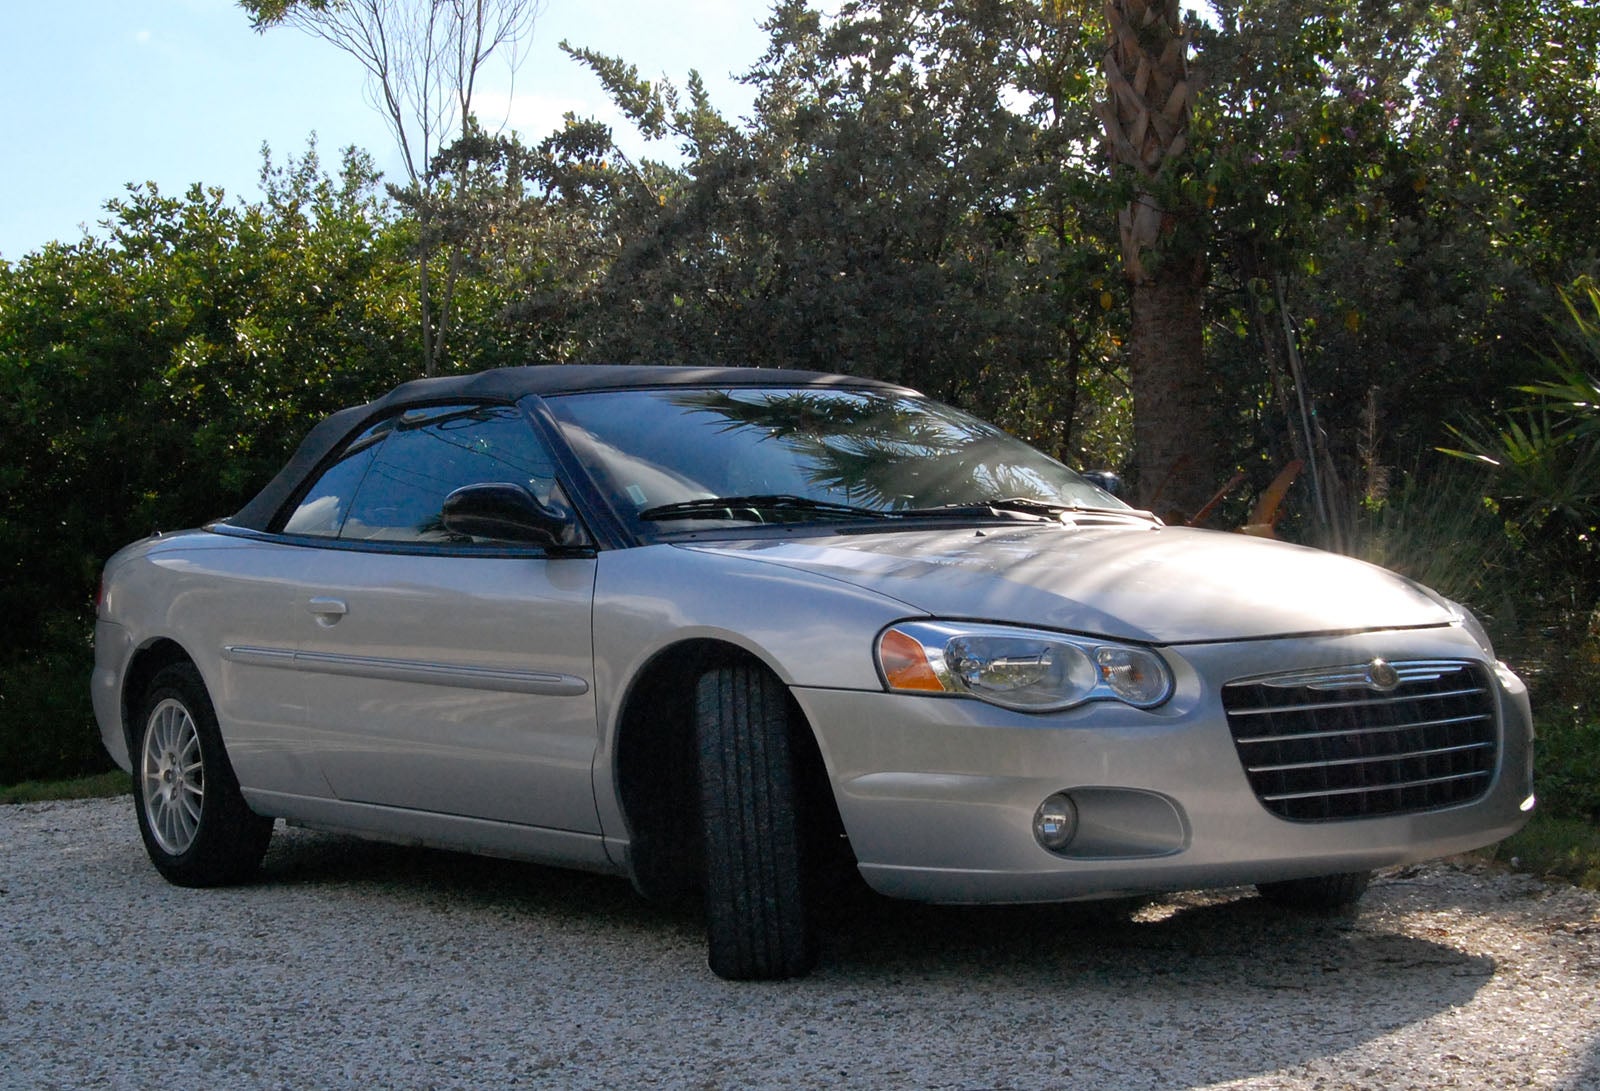 Chrysler sebring cruise control problems